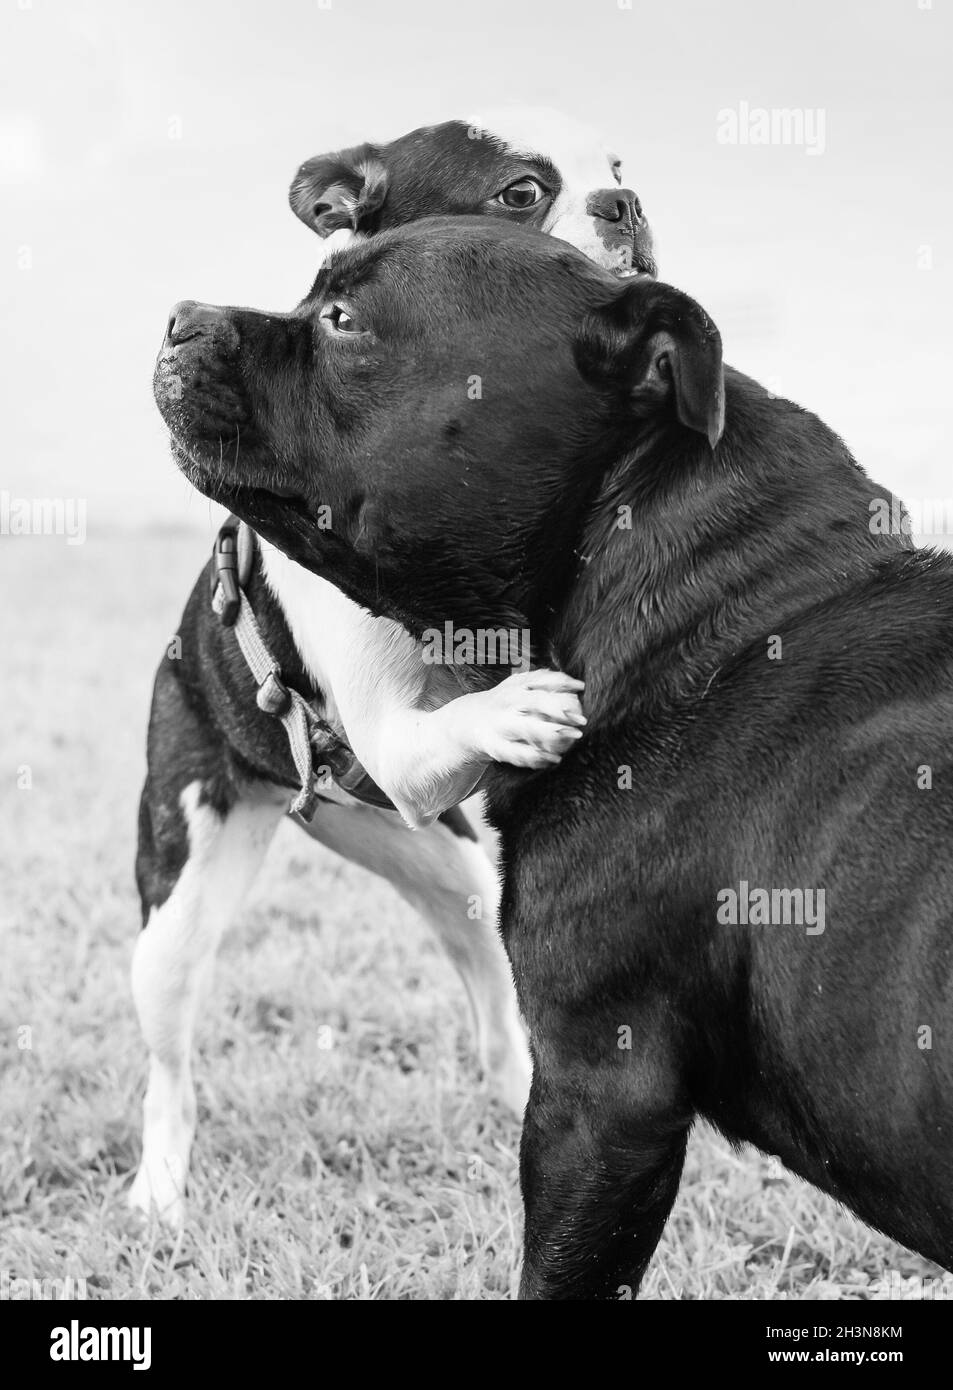 Boston Terrier chiot avec ses pattes autour du grand cou d'un Staffordshire Bull Terrier.Ils s'embrasent ou luttent. L'image est noire et blanche Banque D'Images